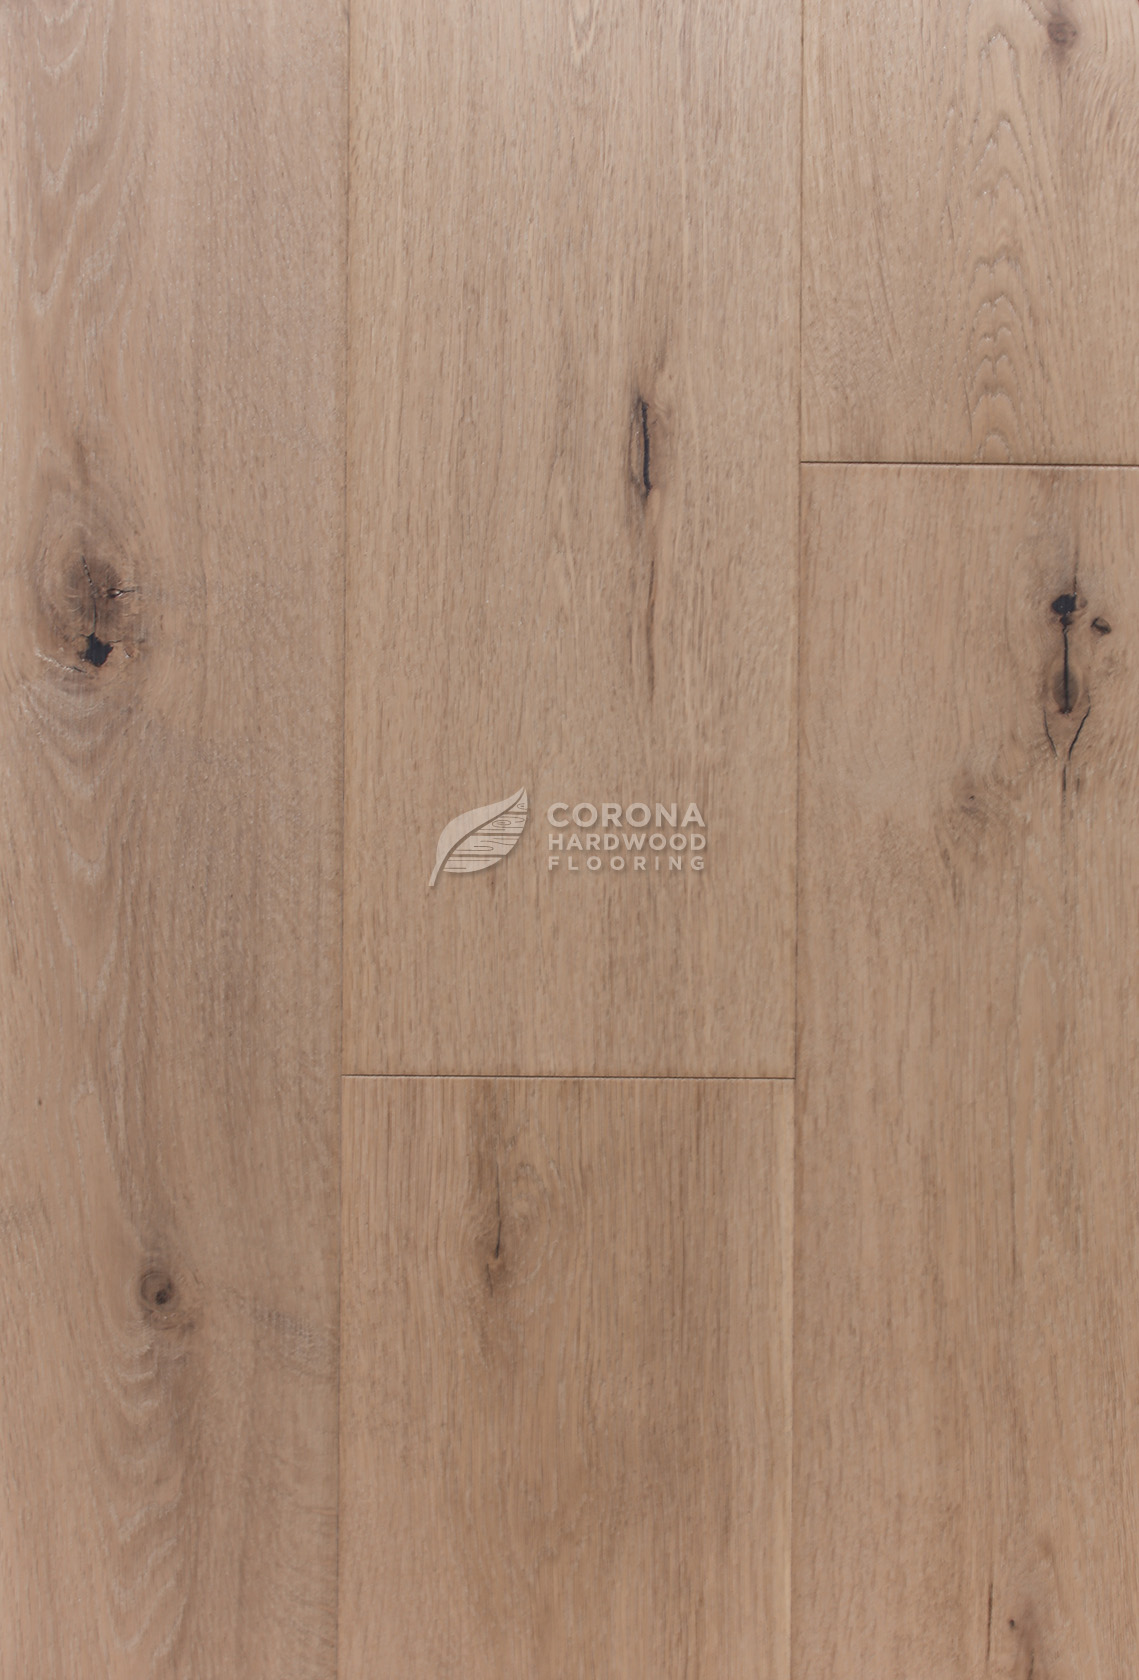 Hardwood Flooring Laminate Floors, Pacific Hardwood Flooring